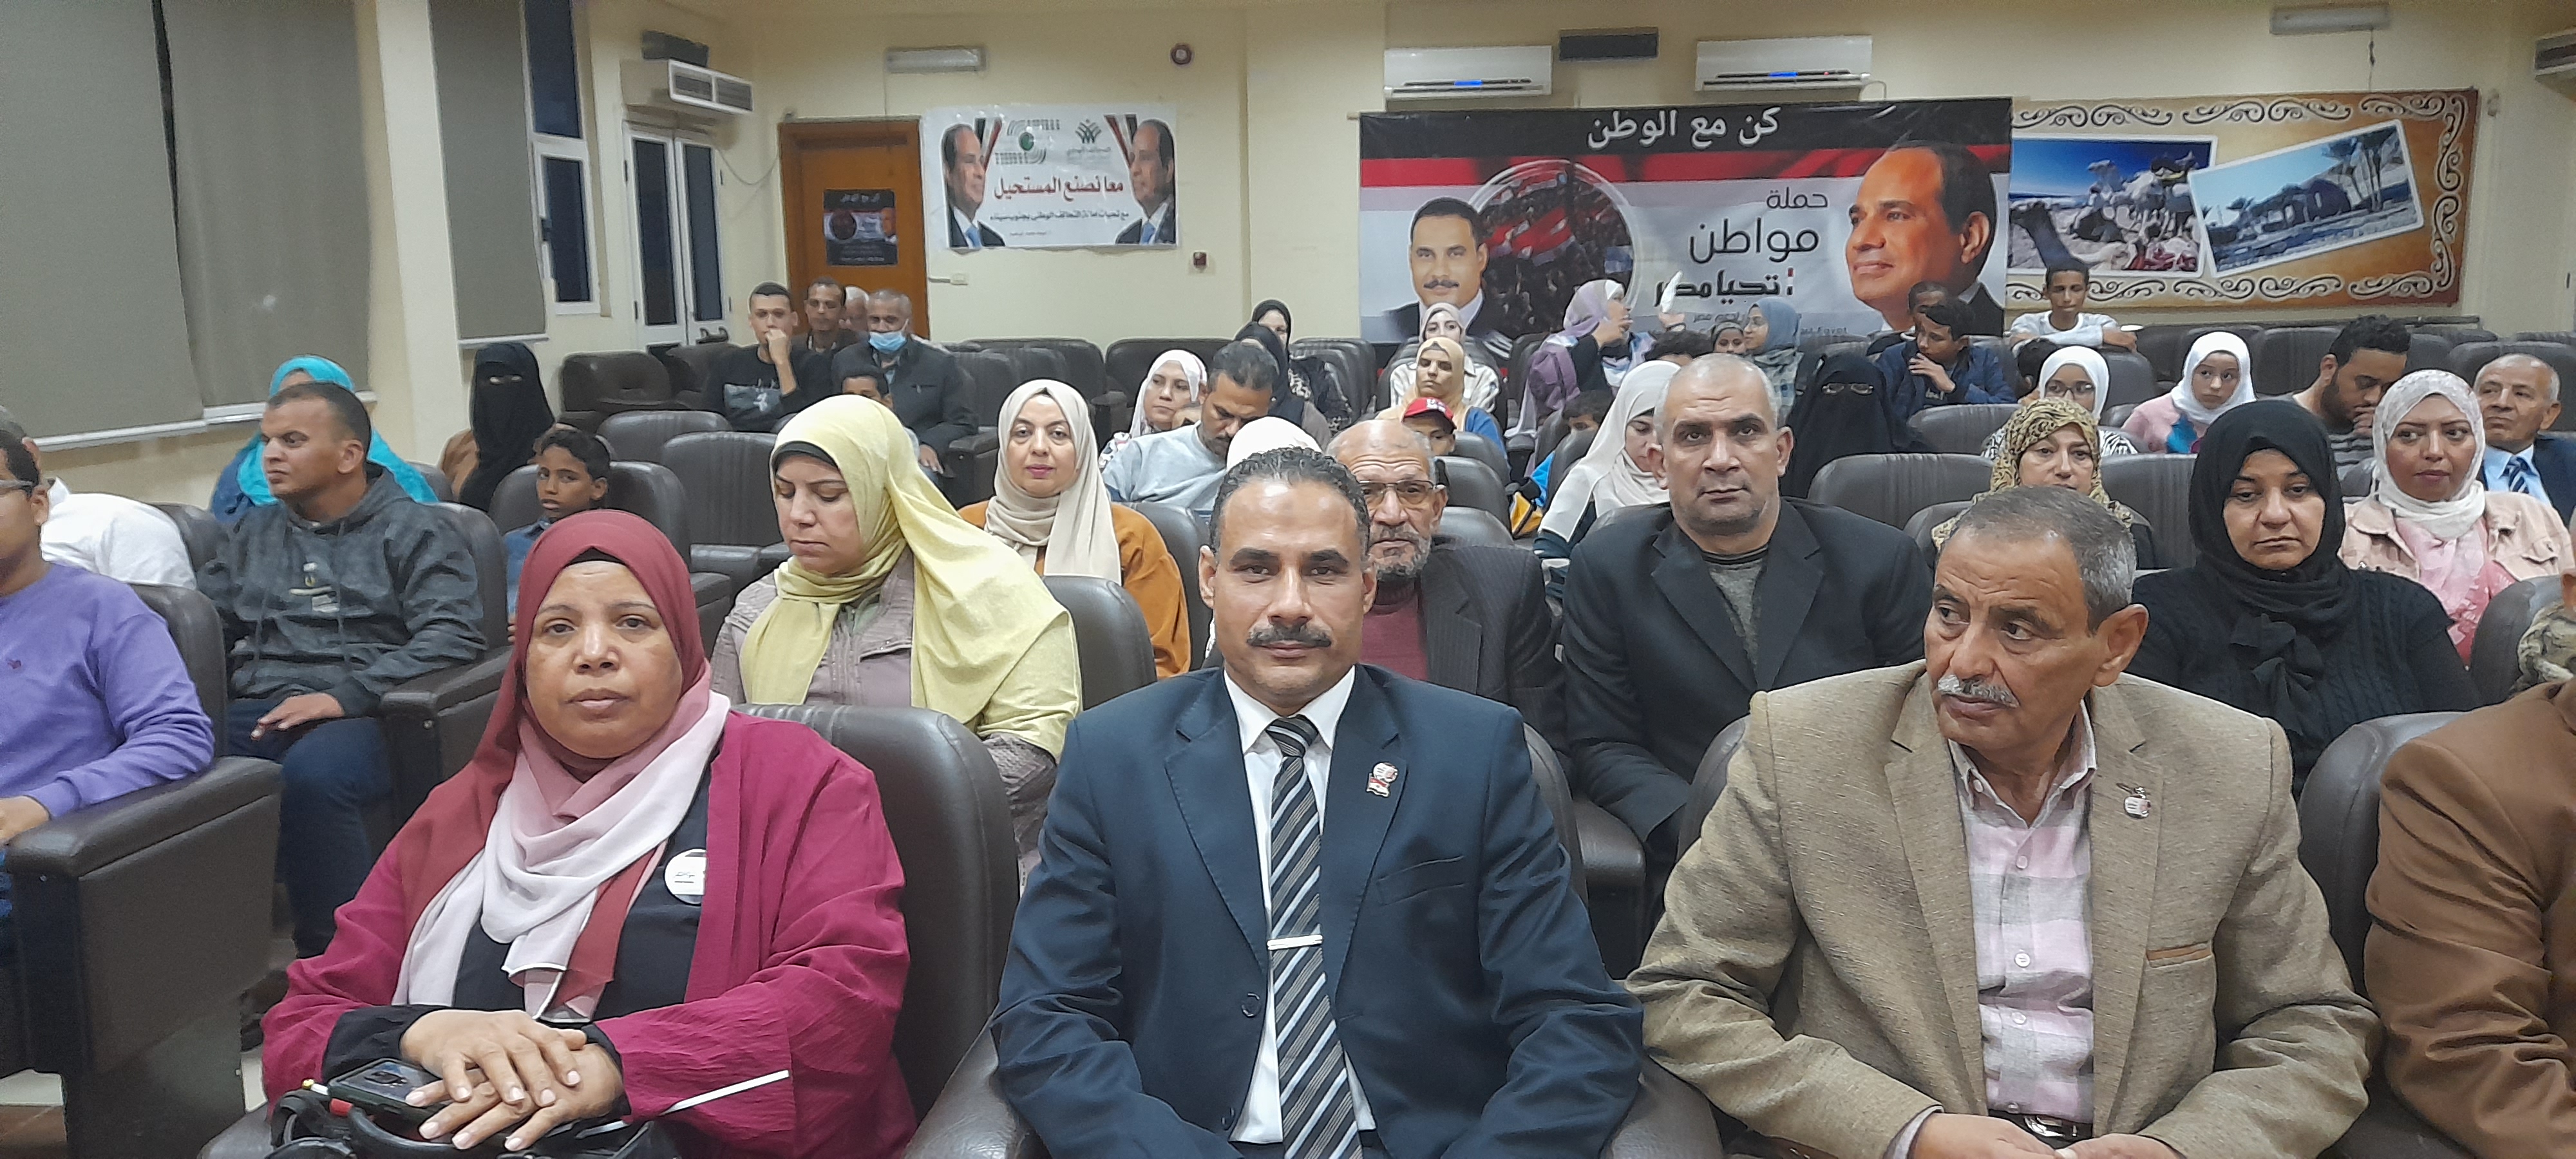 مؤتمر لدعم الرئيس السيسى فى جنوب سيناء (3)